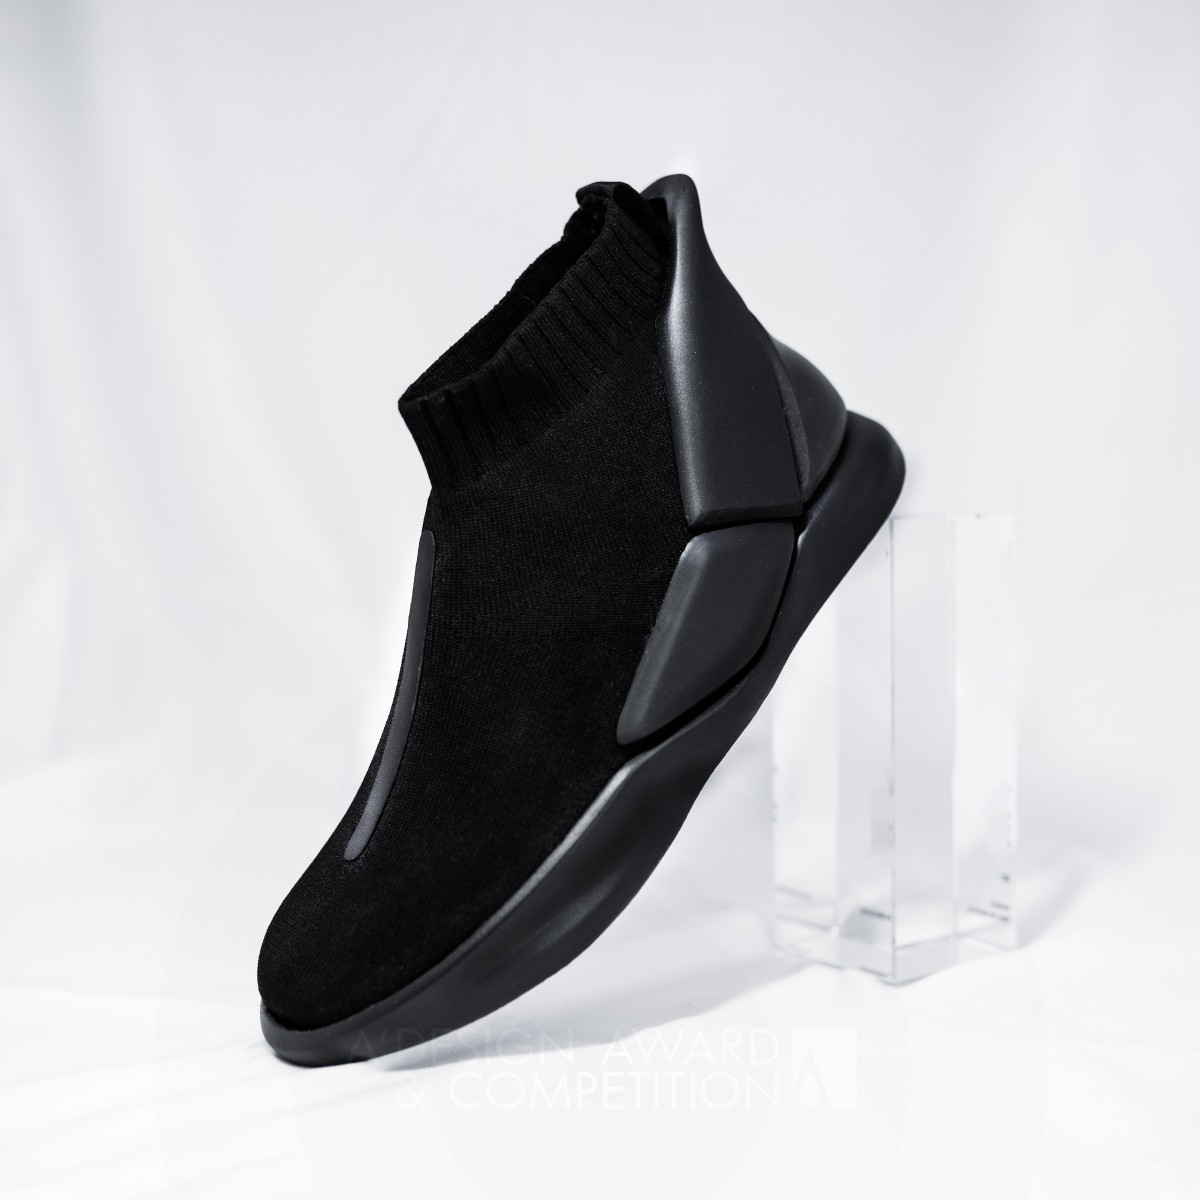 Adamas Shoes by Hengbo Zhang